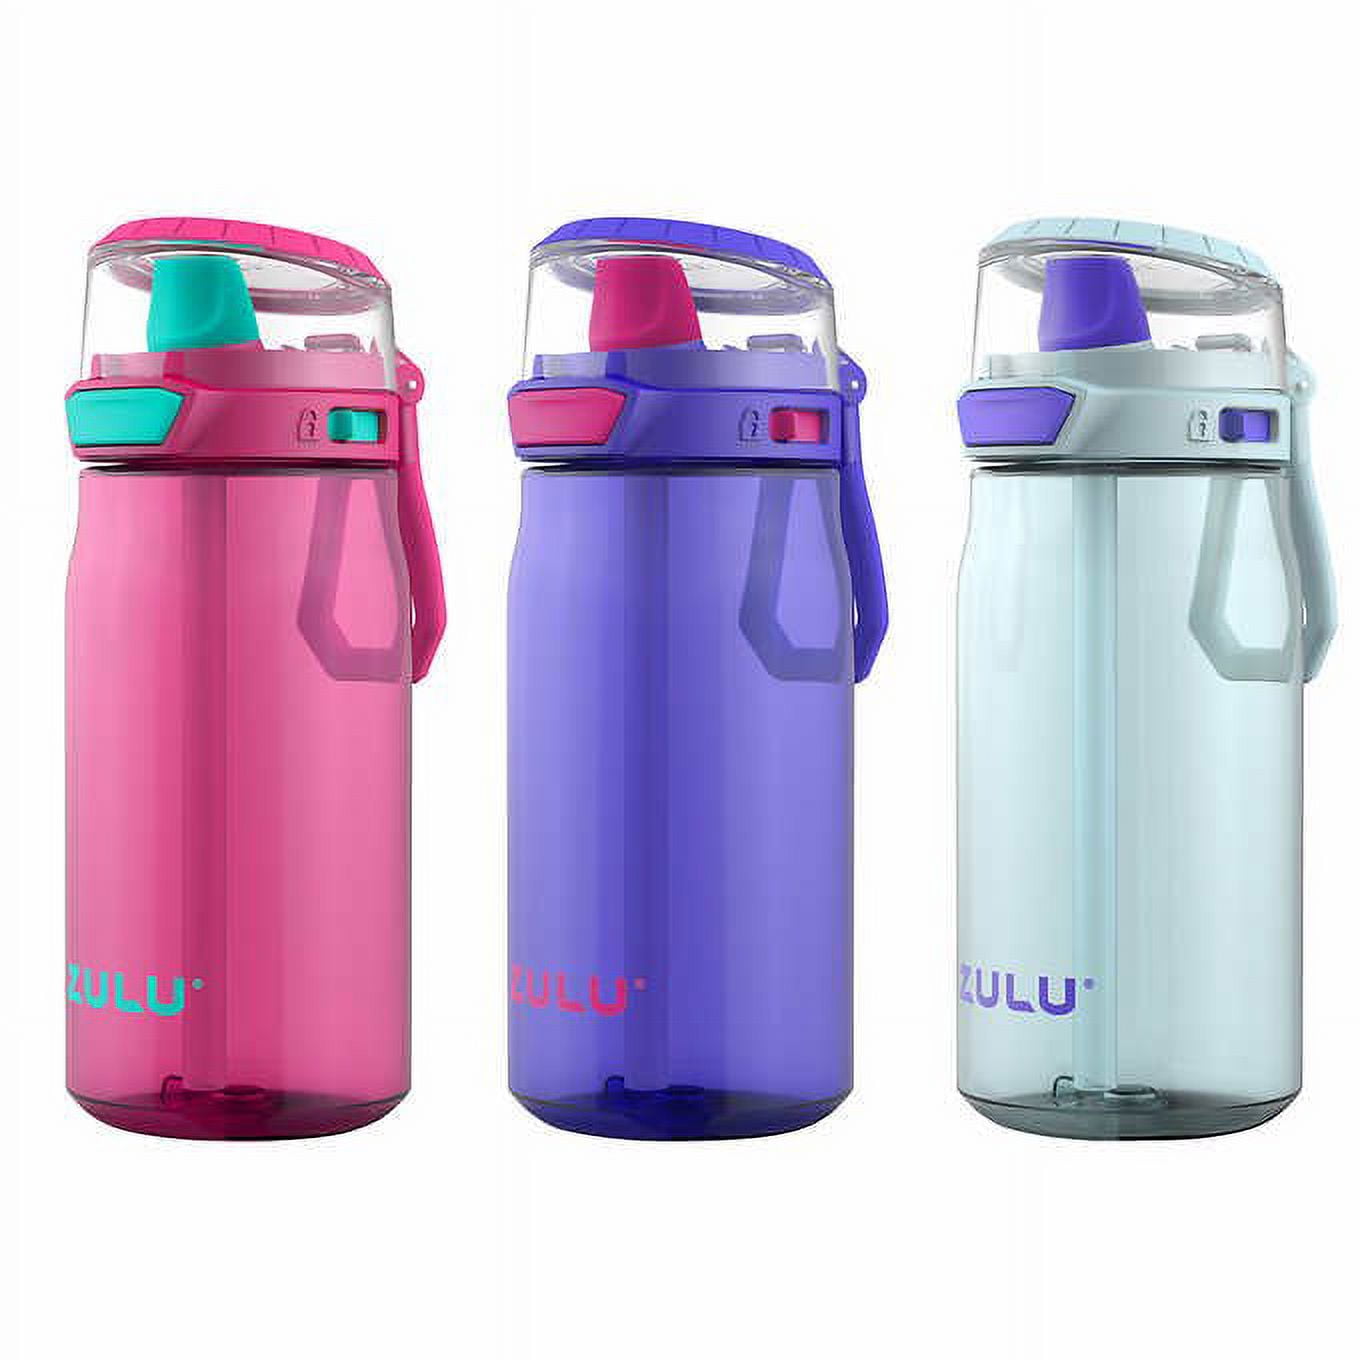 Zulu Flex 12oz Stainless Steel Water Bottle - Pink/mint : Target